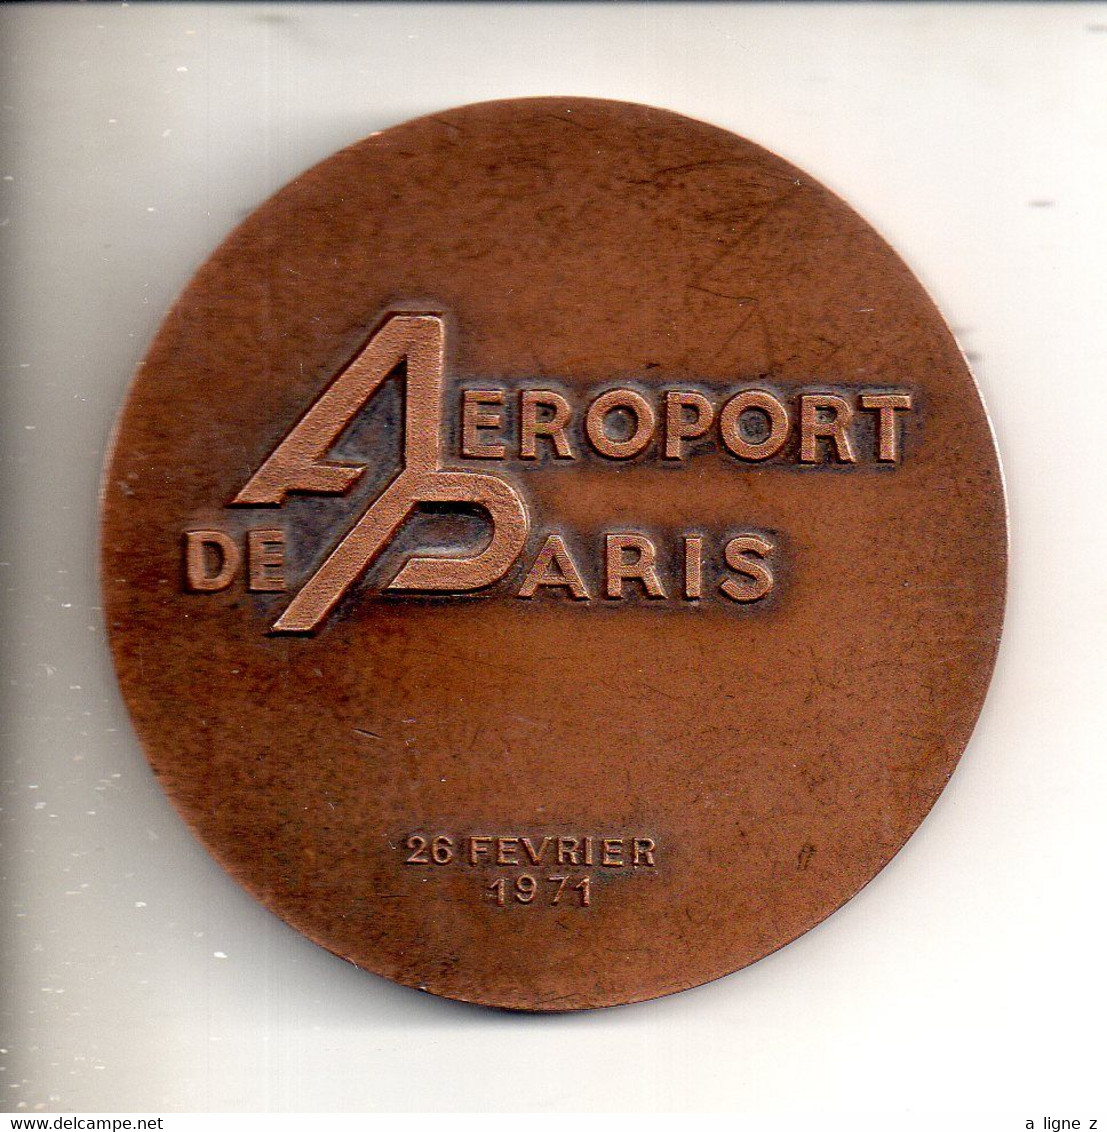 REF PC2 : Médaille Bronze 70 Mm Orly Ouest Aéroport De Paris 26 Février 1971 - 171.2 Gr - Professionnels / De Société